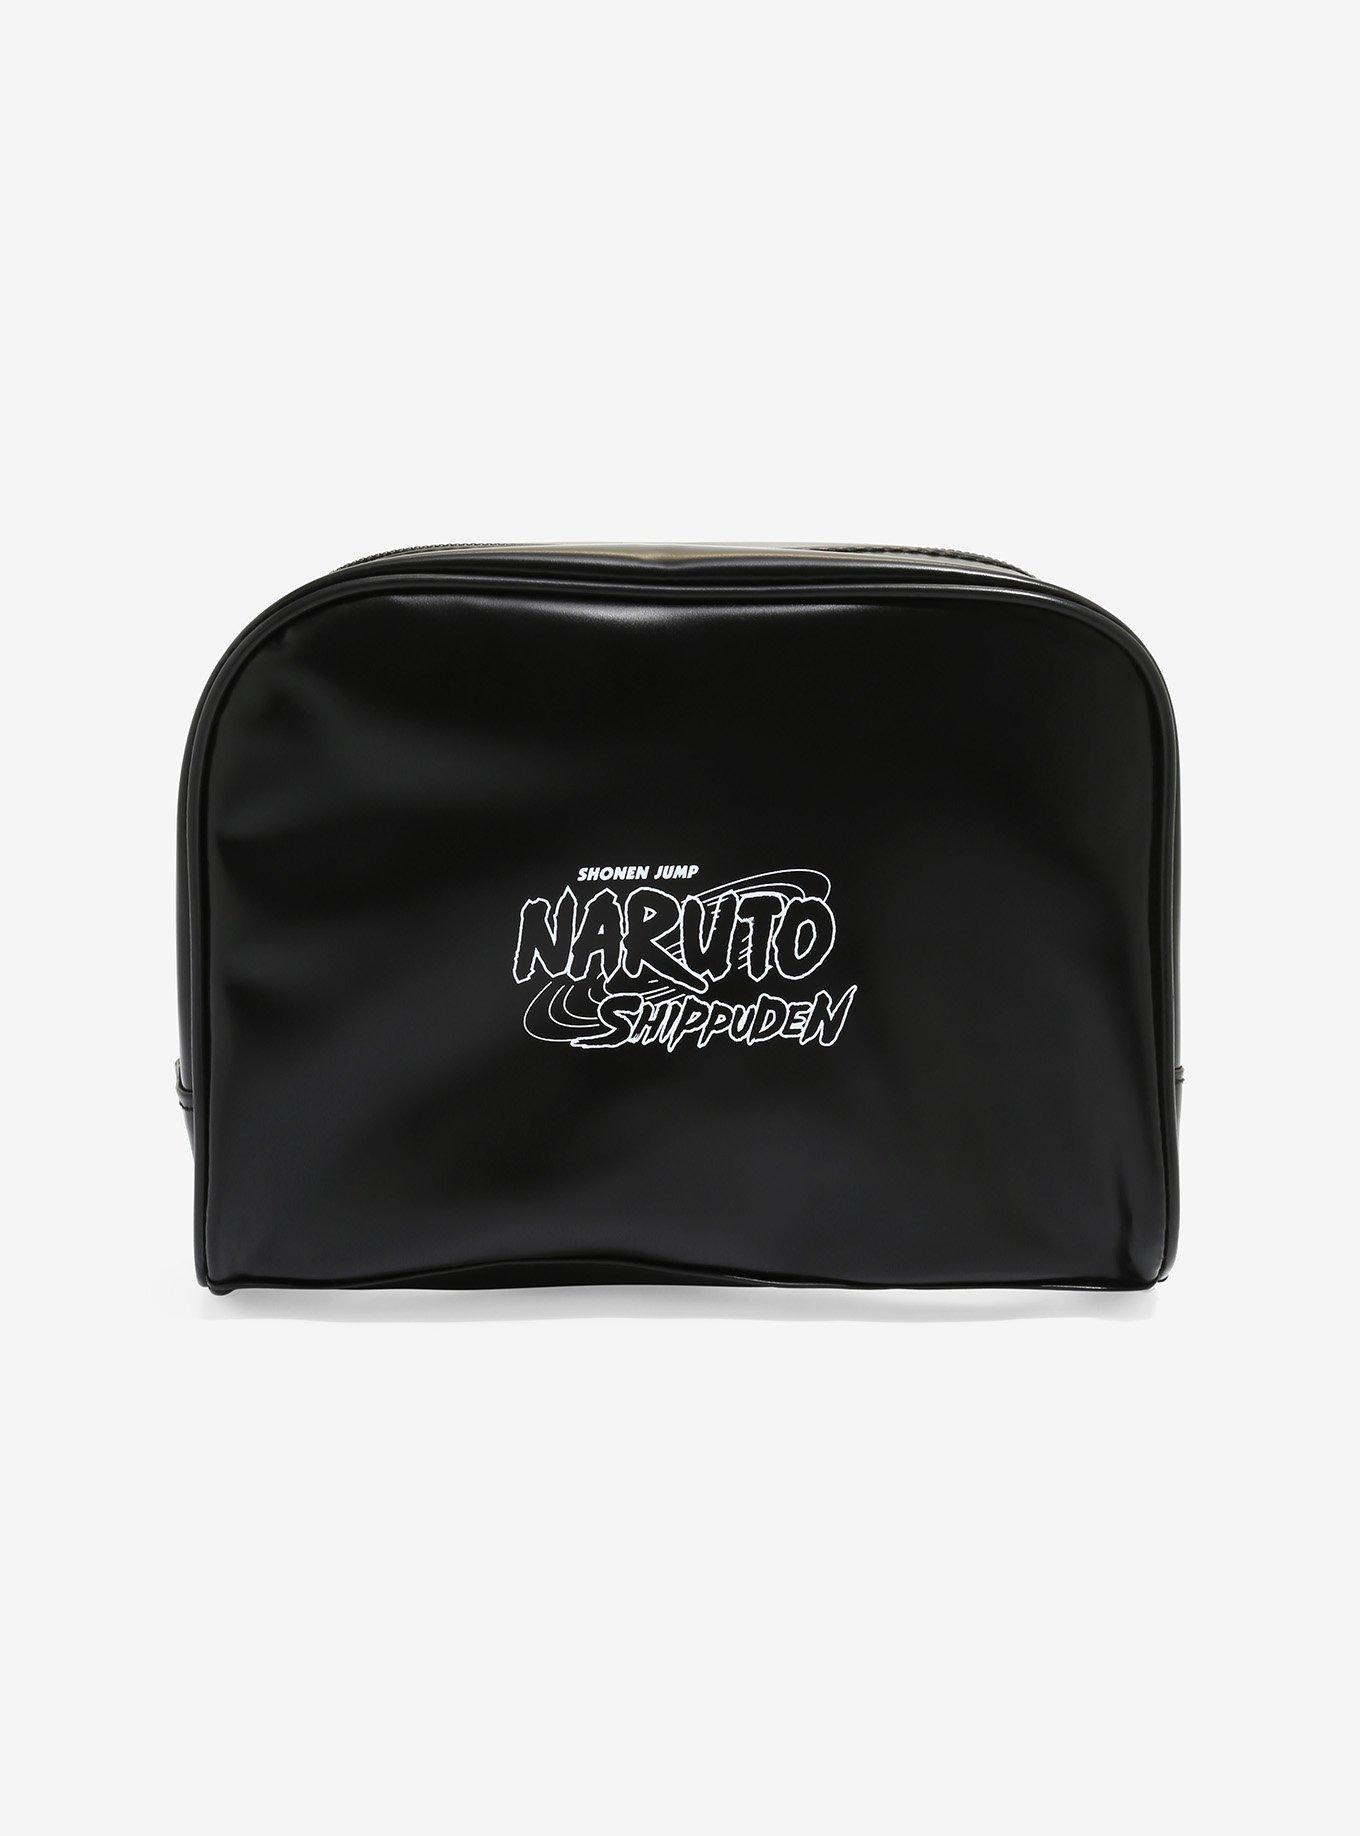 Naruto Shippuden Akatsuki Makeup Bag, , alternate